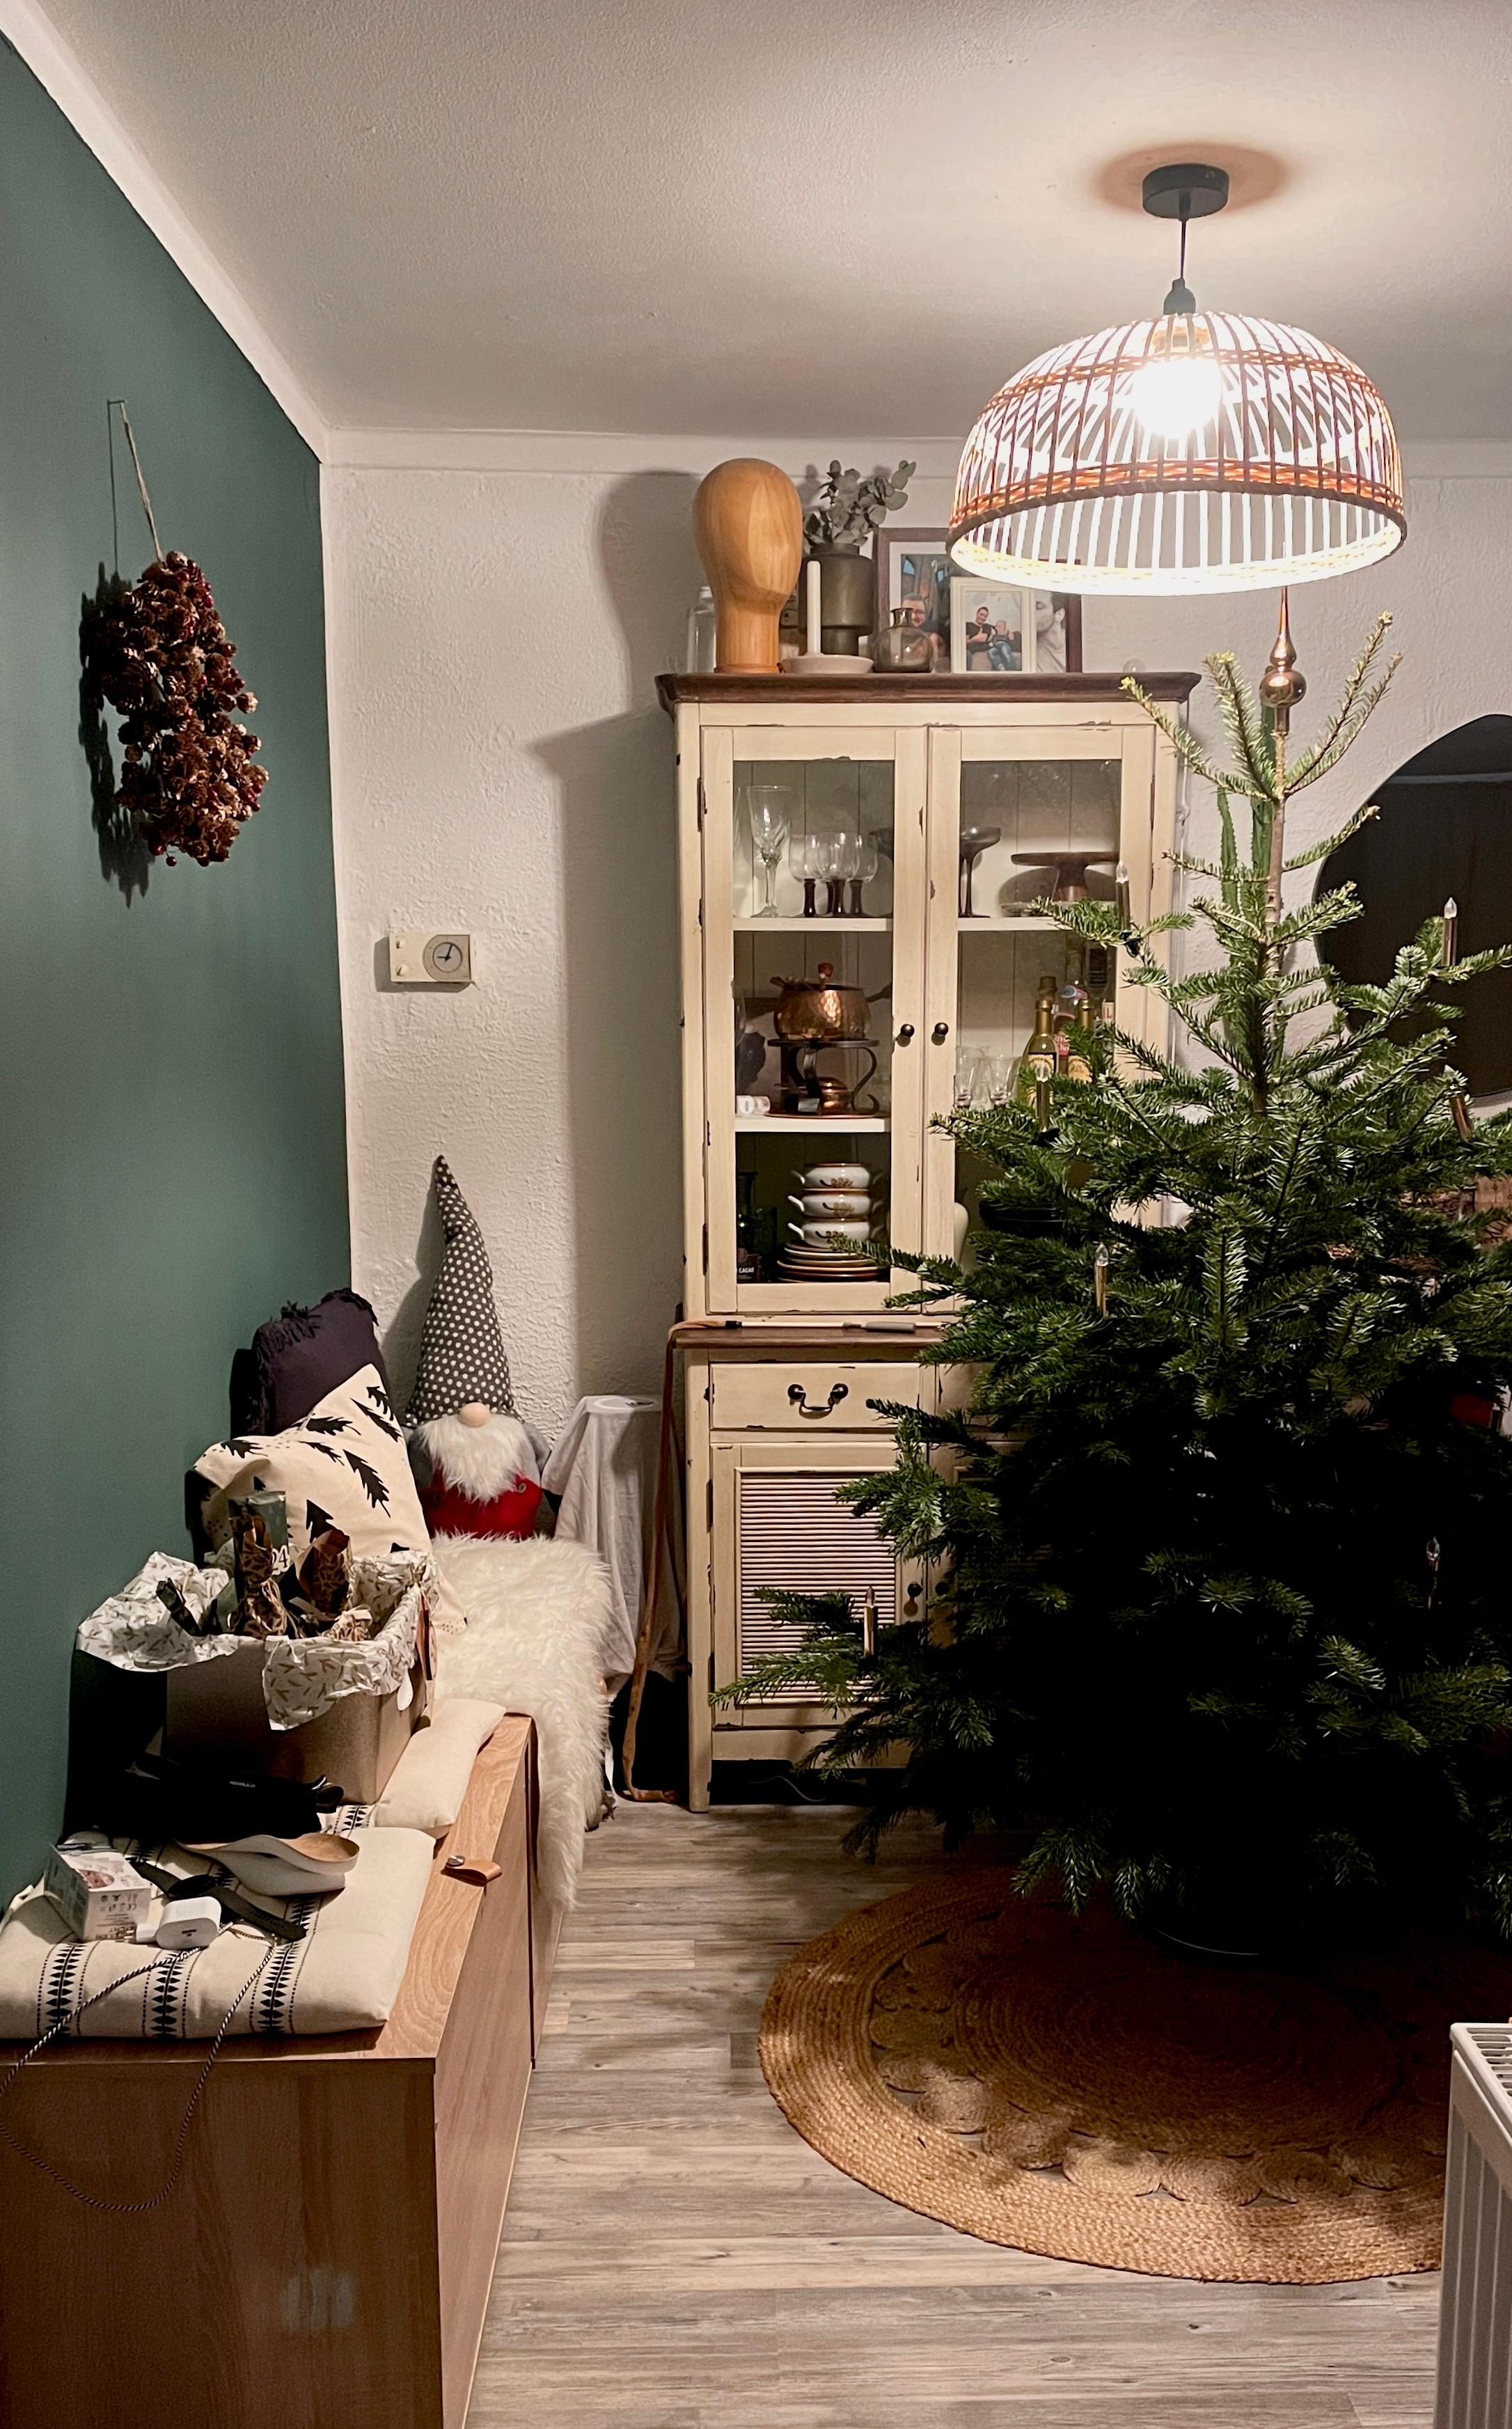 Heut wird der Baum geschmückt 🎄😍
#xmastime#wohnzimmer#weihnachtsbaum#interiorliebe